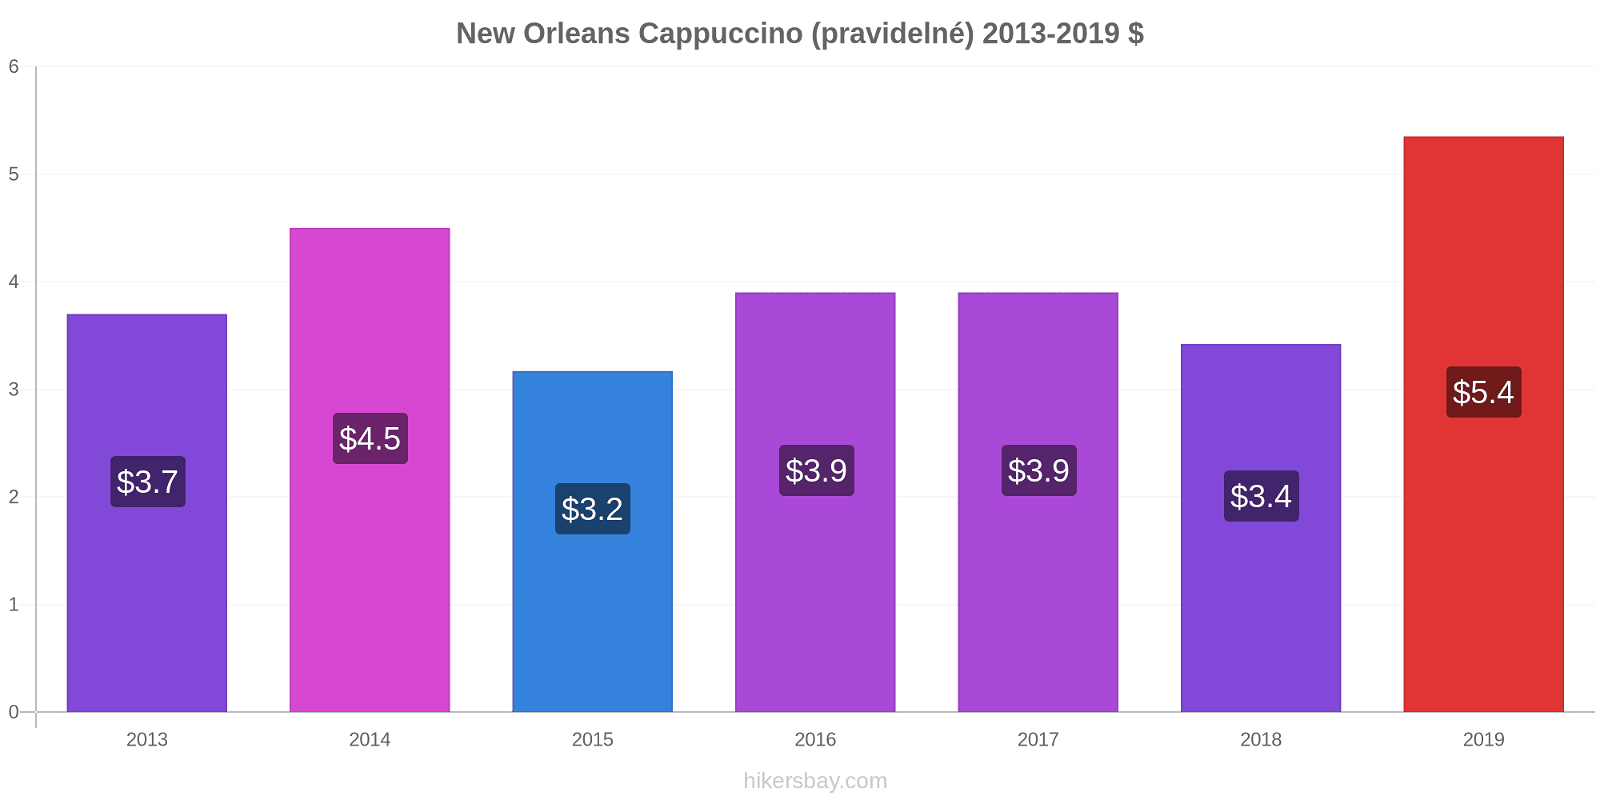 New Orleans změny cen Cappuccino (pravidelné) hikersbay.com